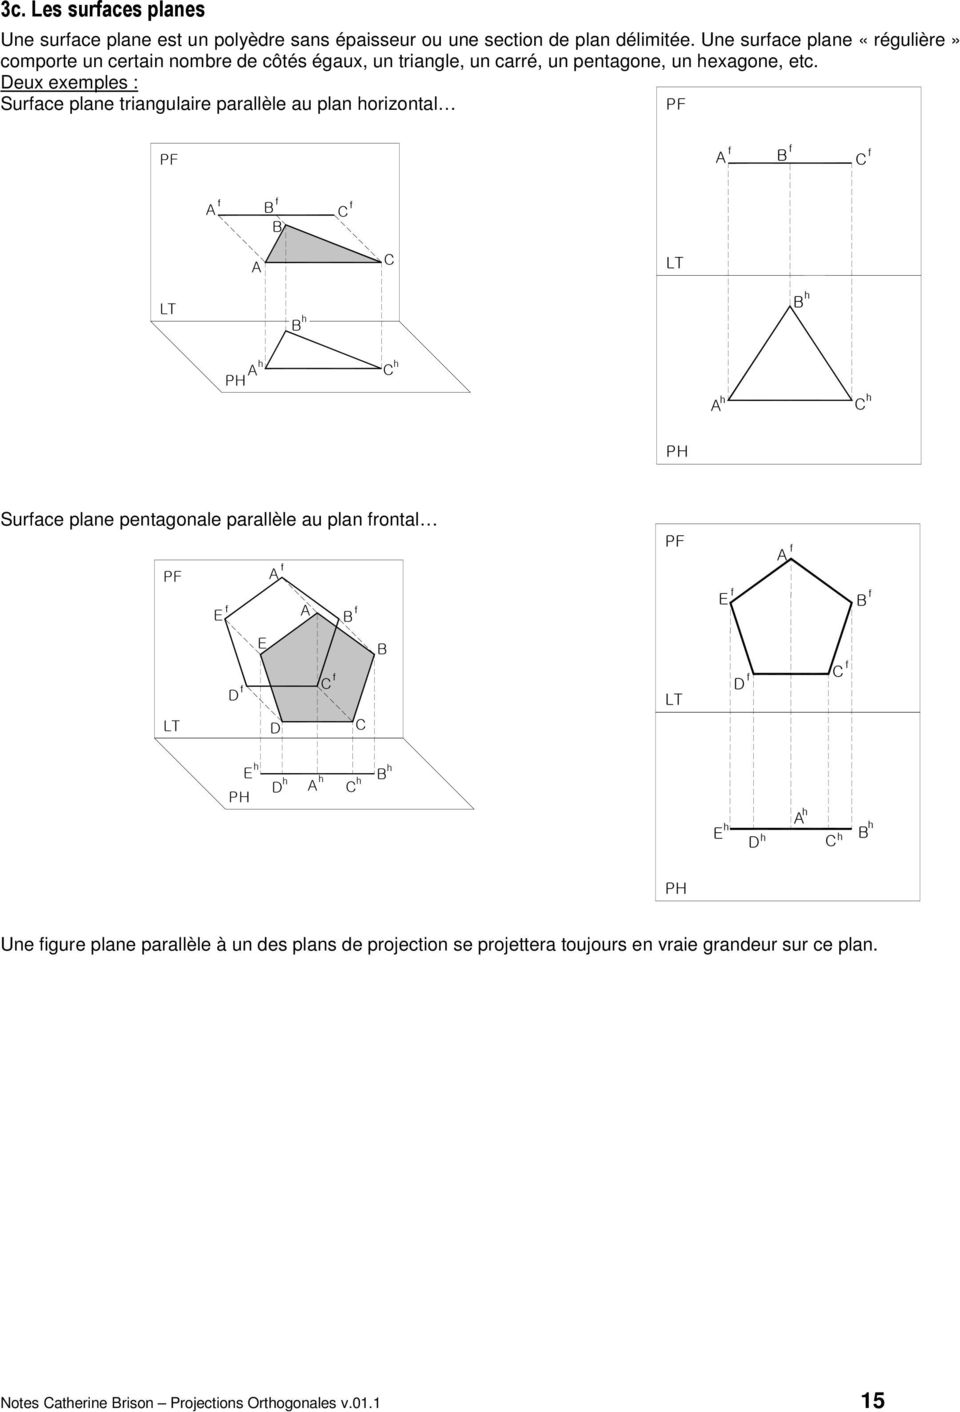 eux exemples : uace plane tiangulaie paallèle au plan oizontal uace plane pentagonale paallèle au plan ontal E E E E E